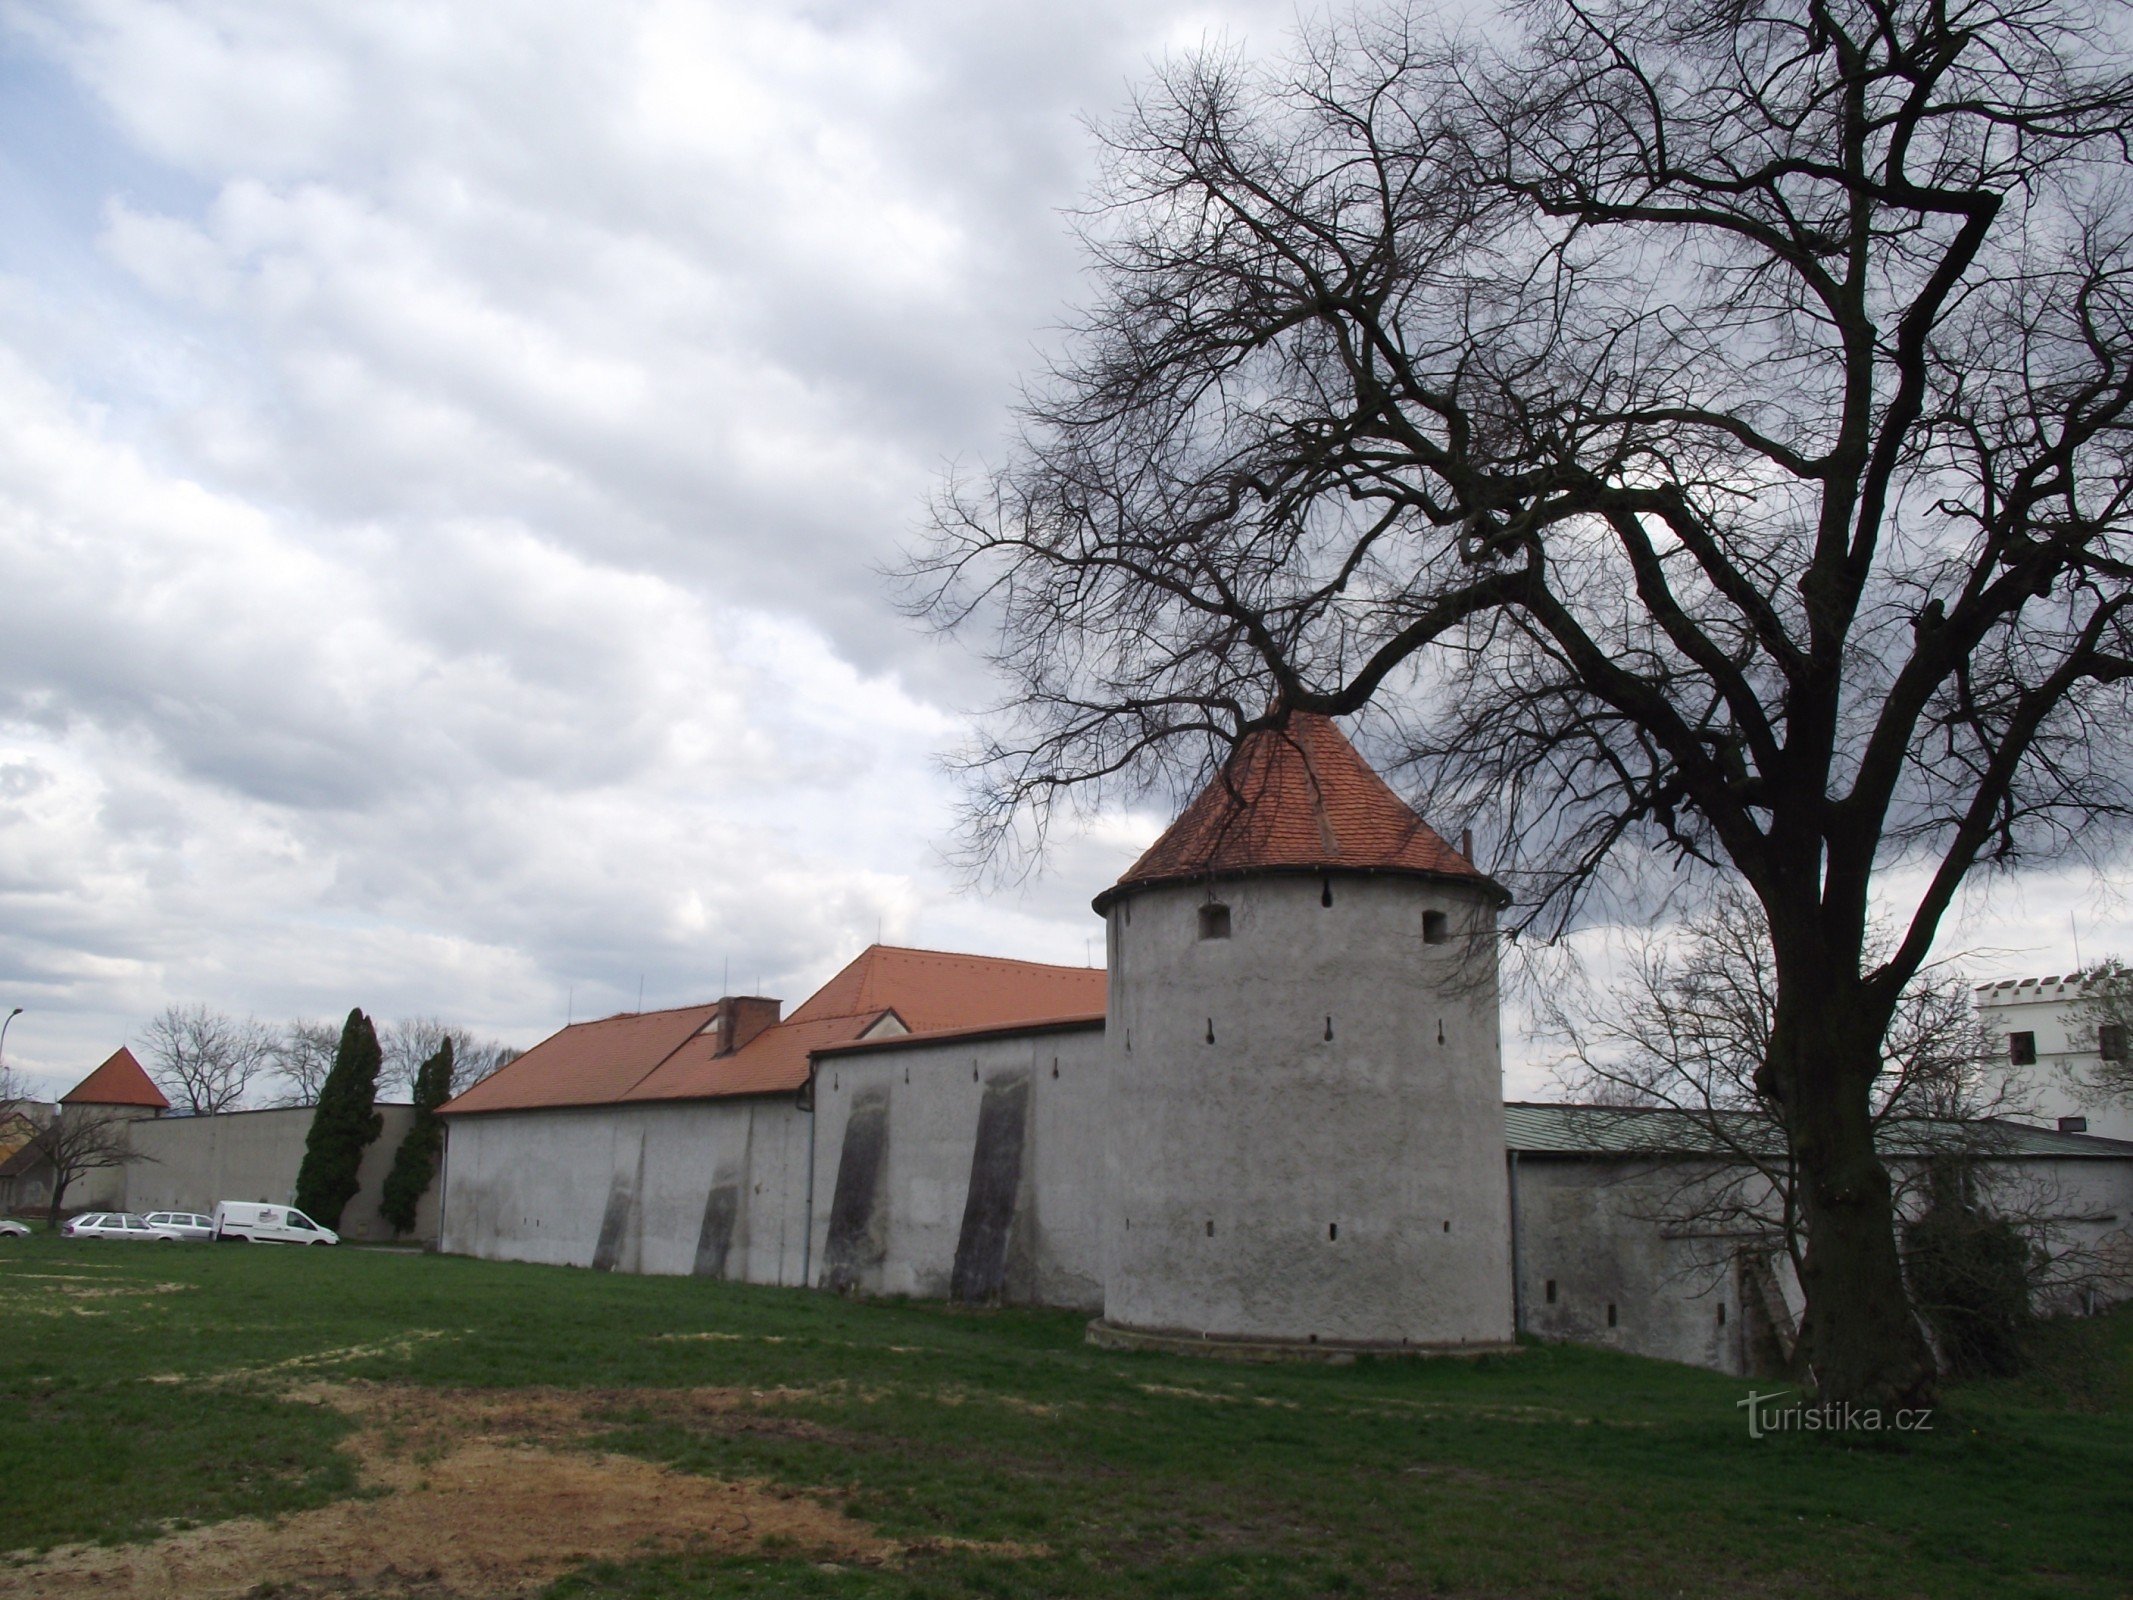 Uherský Brod - fortificações da cidade